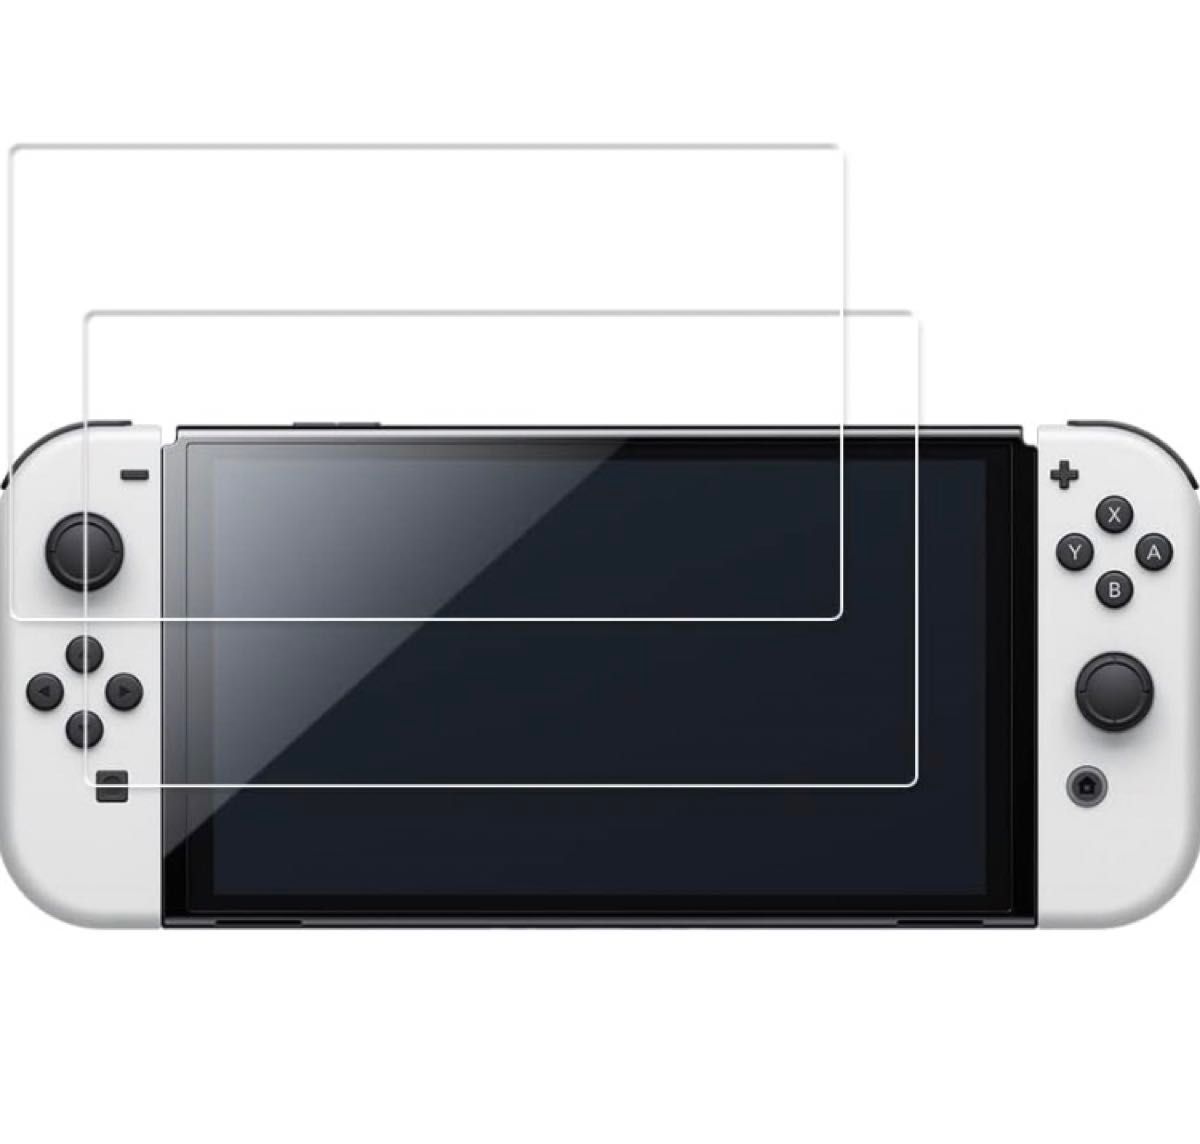  2枚セット HKKAIS 強化ガラス New Nintendo Switch 保護フィルム